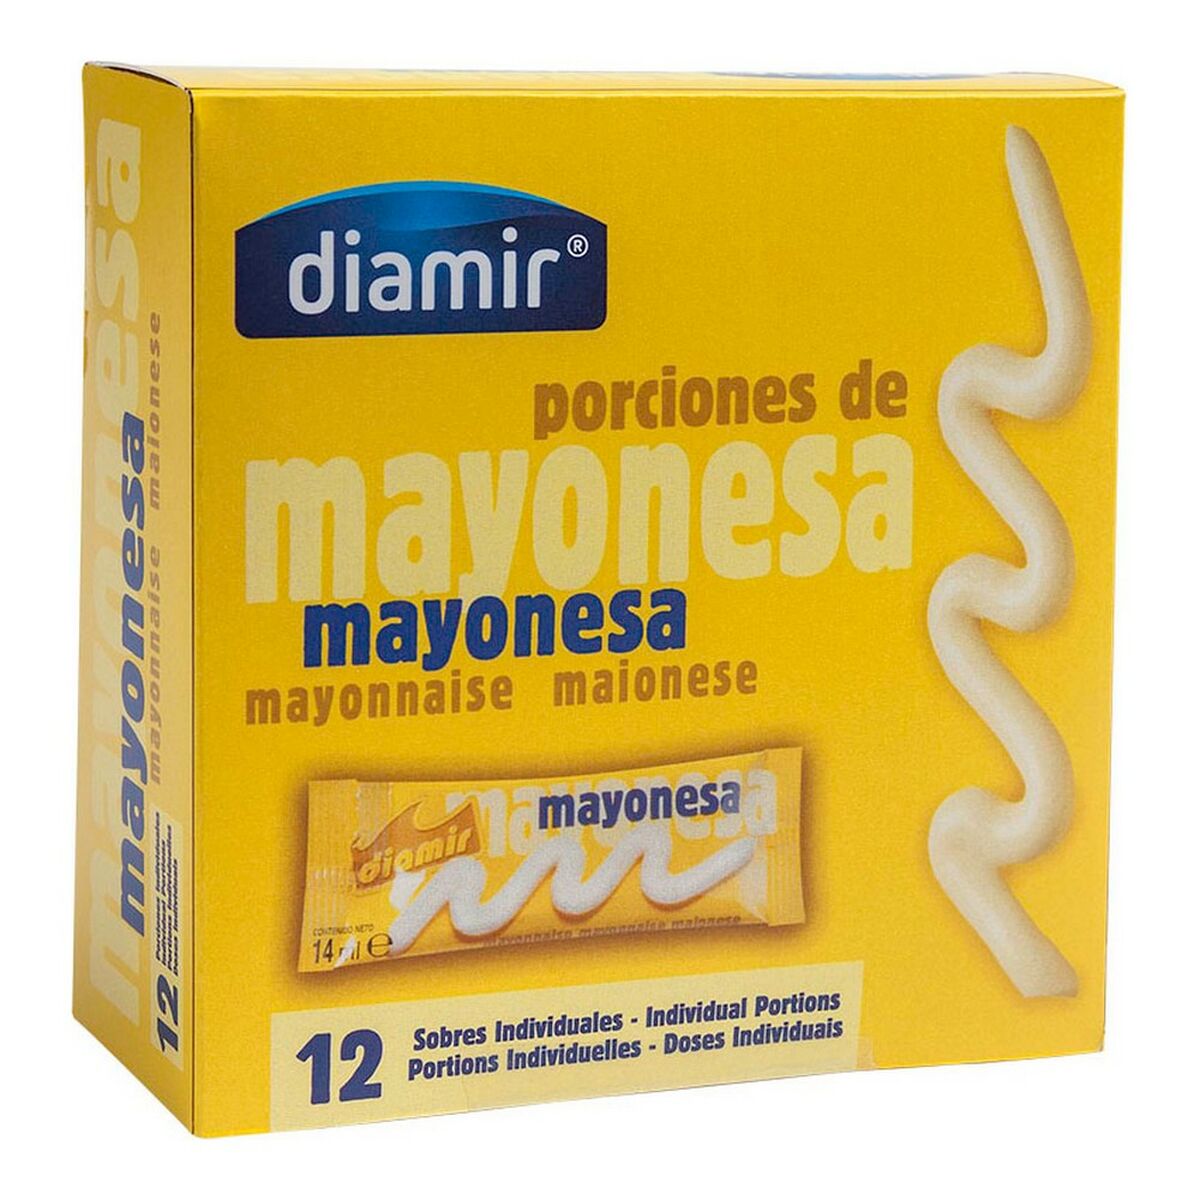 Maionese Diamir (12 x 14 ml)